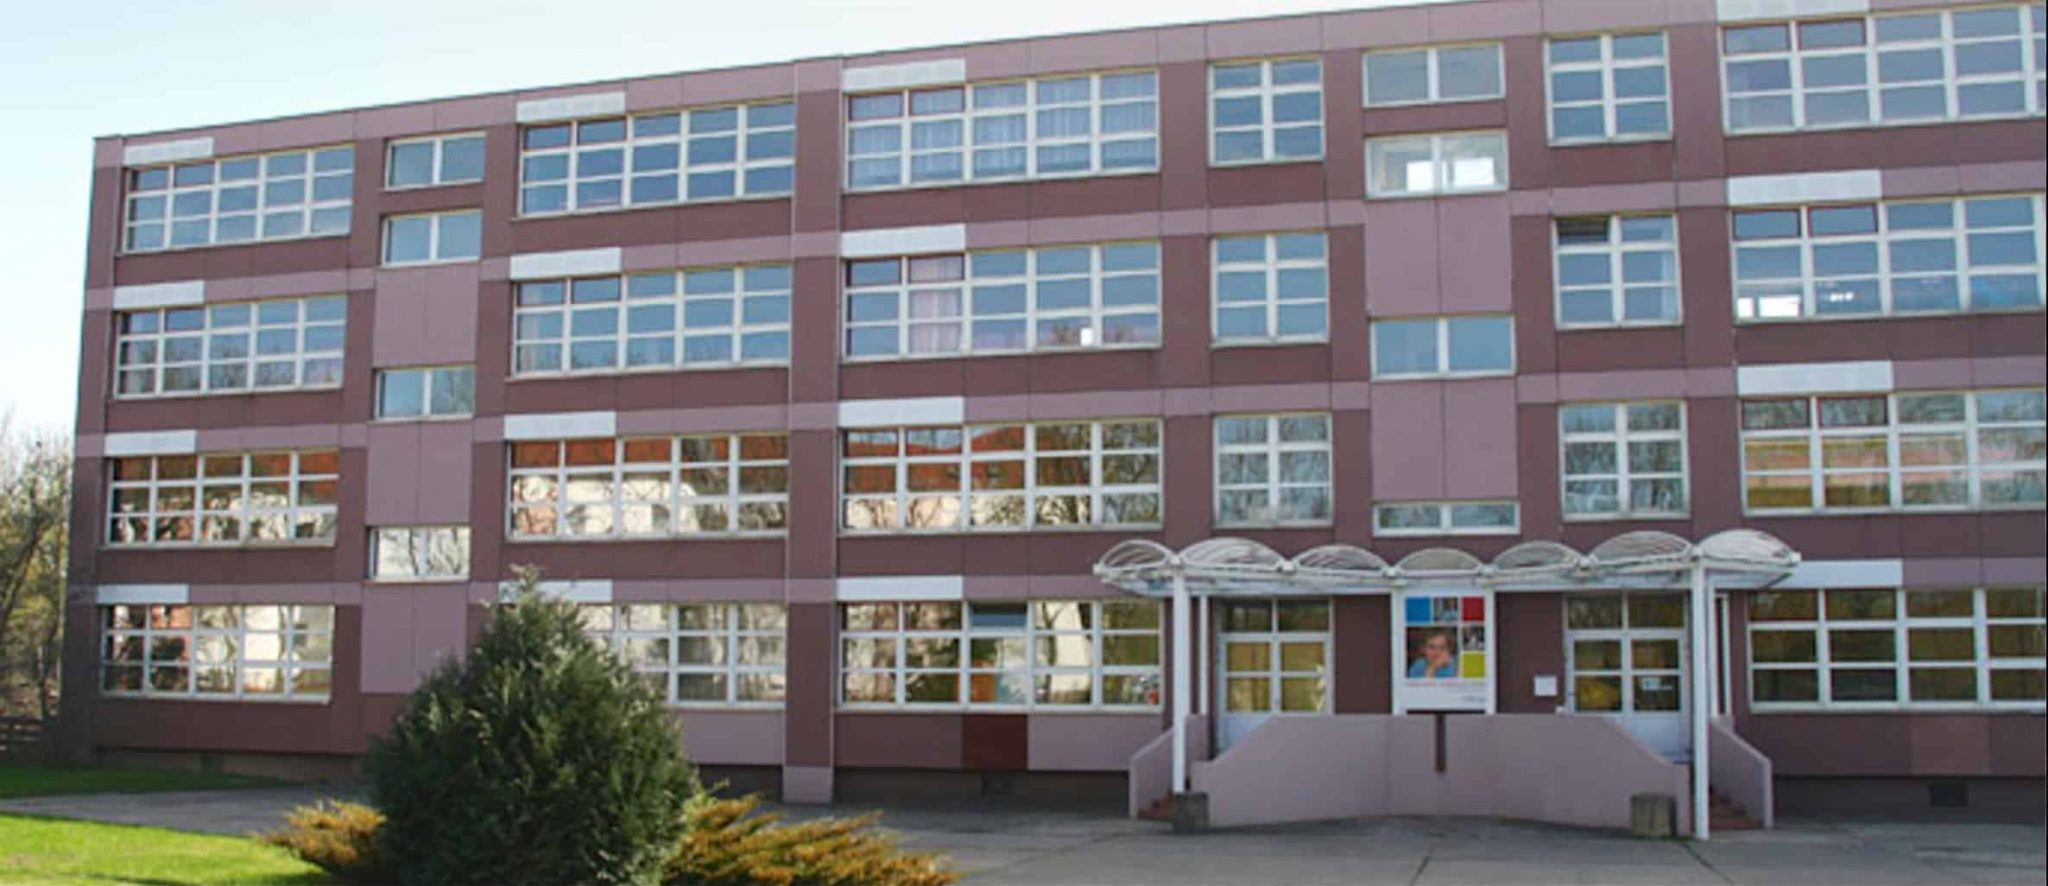 Tag der offenen Tür in der Evangelischen Grundschule Bernau